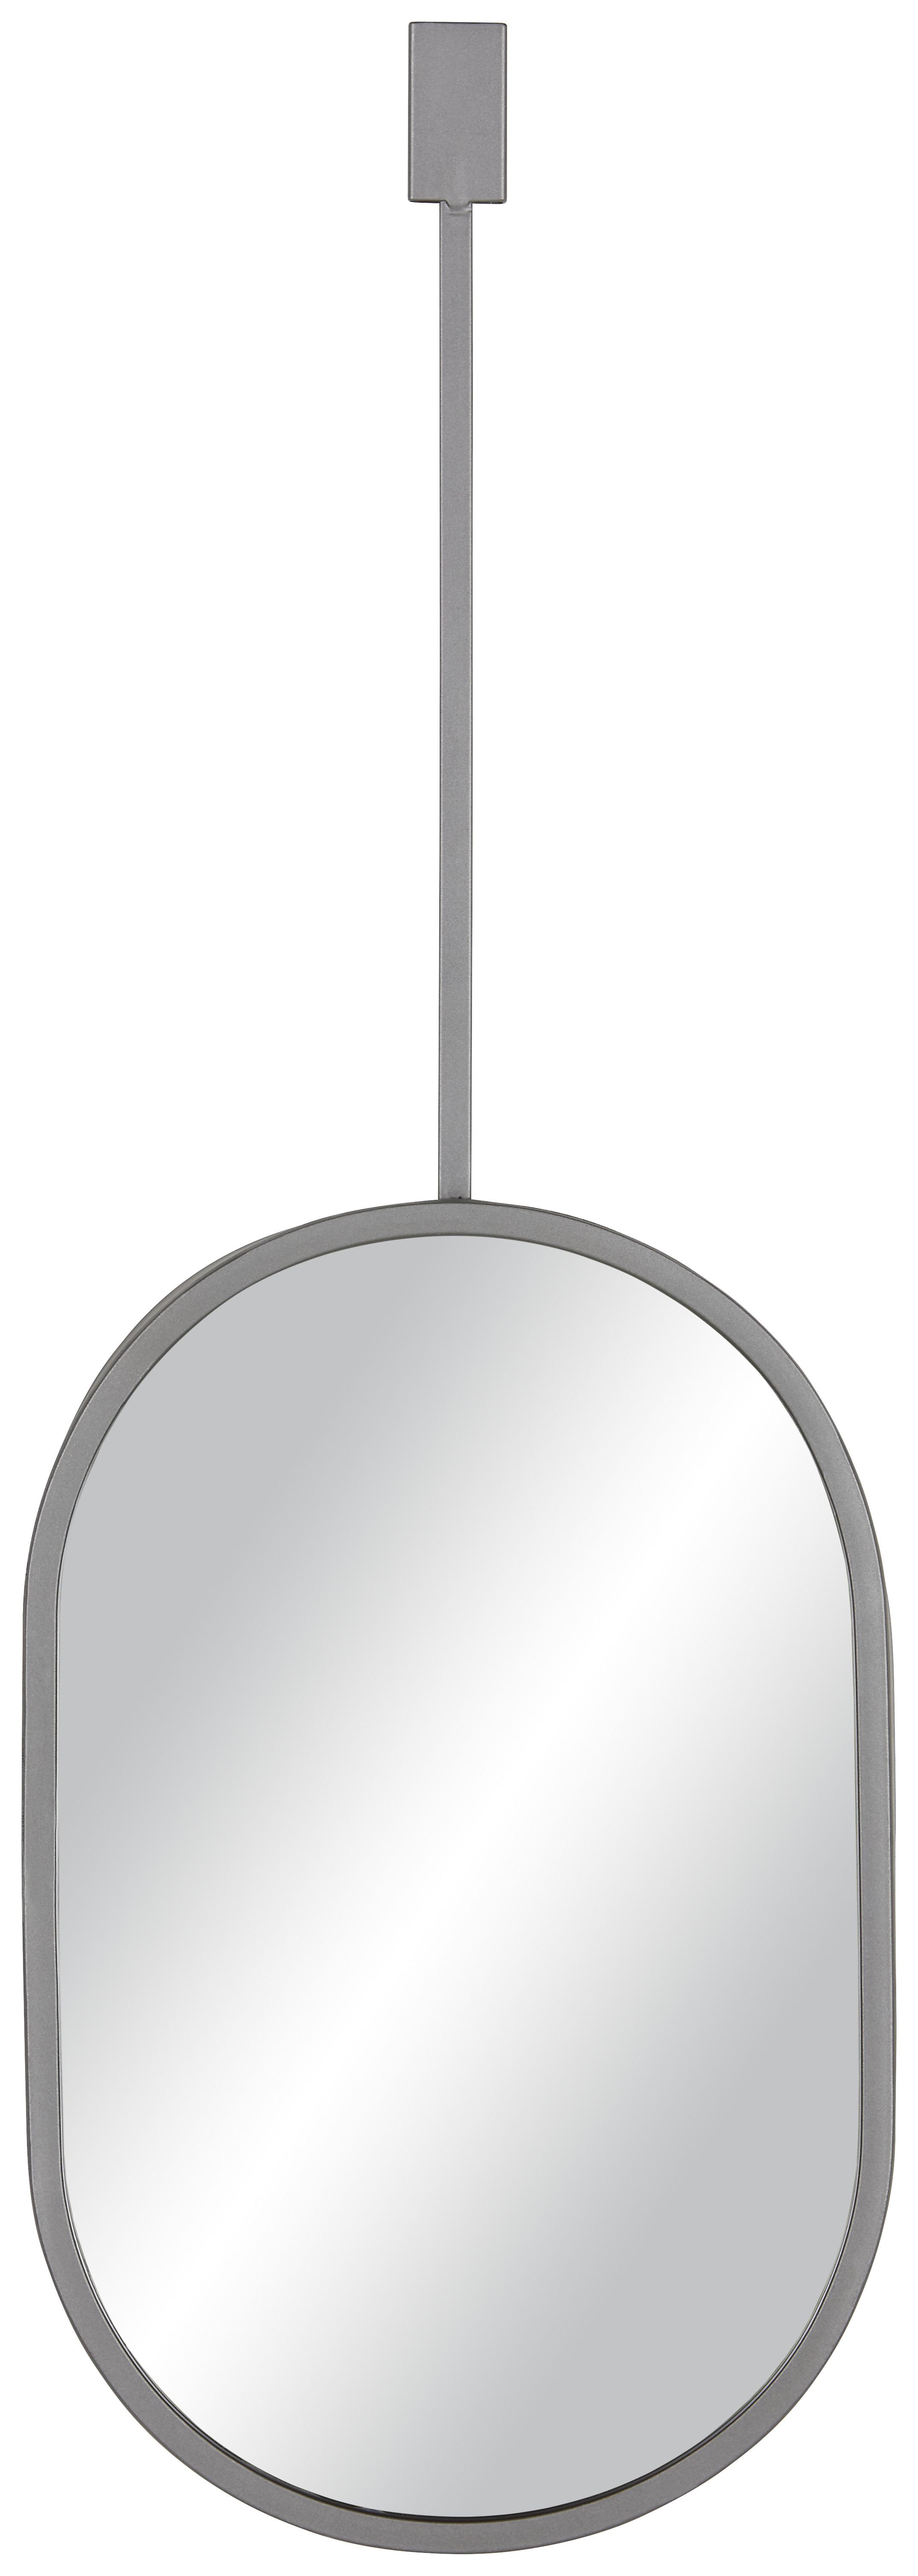 Nástenné Zrkadlo Potpourri -Trend- - sivá, Moderný, kov/sklo (25,5/76/4cm) - Modern Living